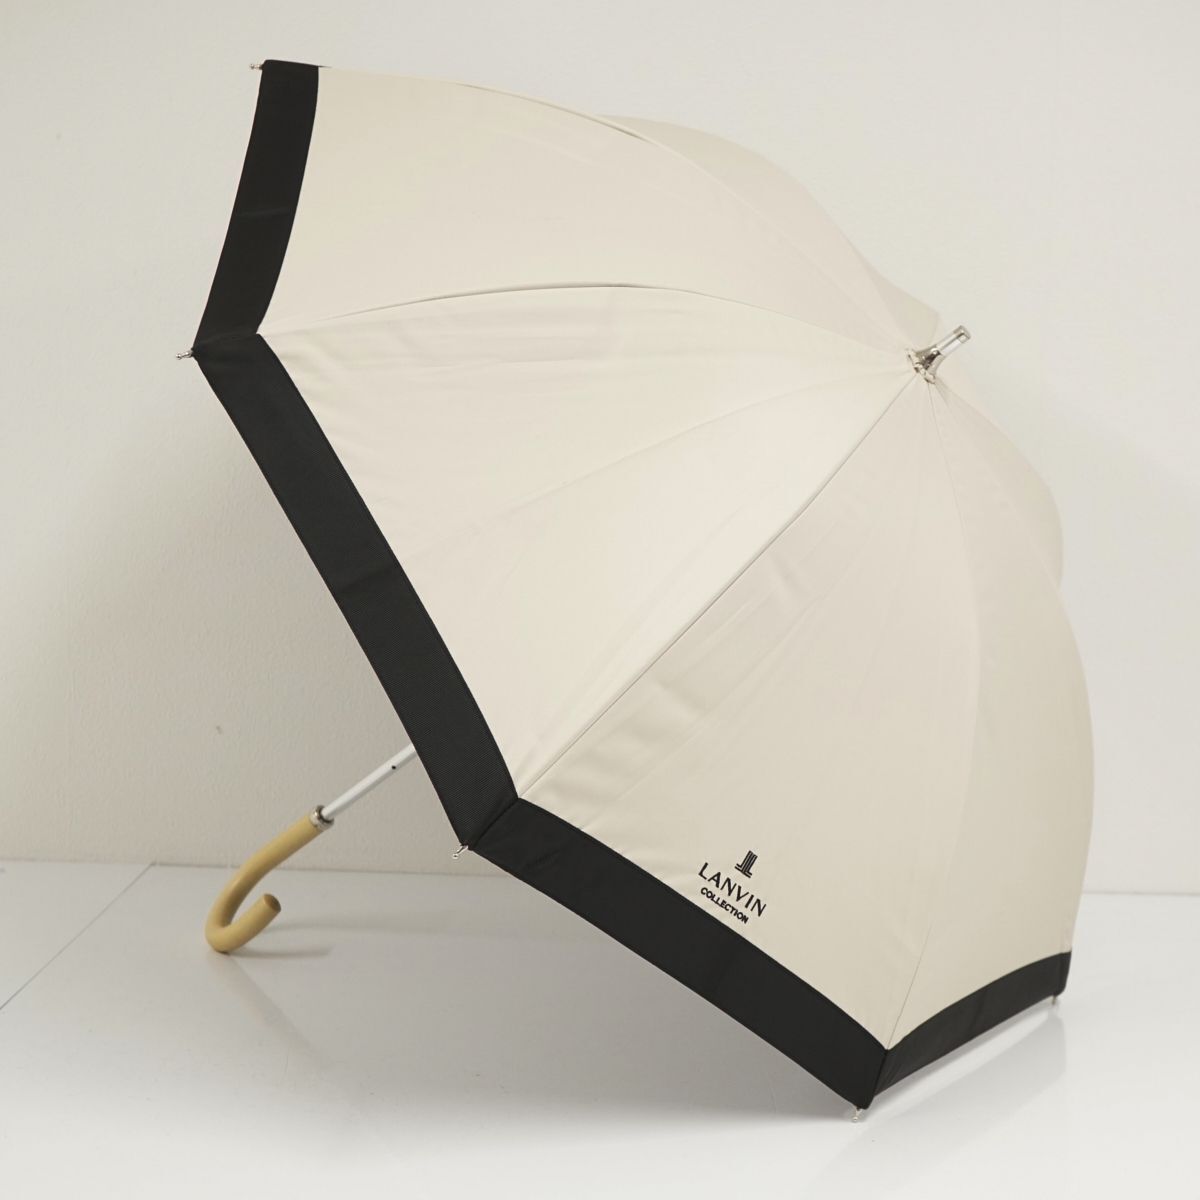 . дождь двоякое применение зонт от солнца LANVIN COLLECTION Lanvin коллекция USED прекрасный товар Logo вышивка черный бежевый затемнение стакан . легкий UV 47cm A0701